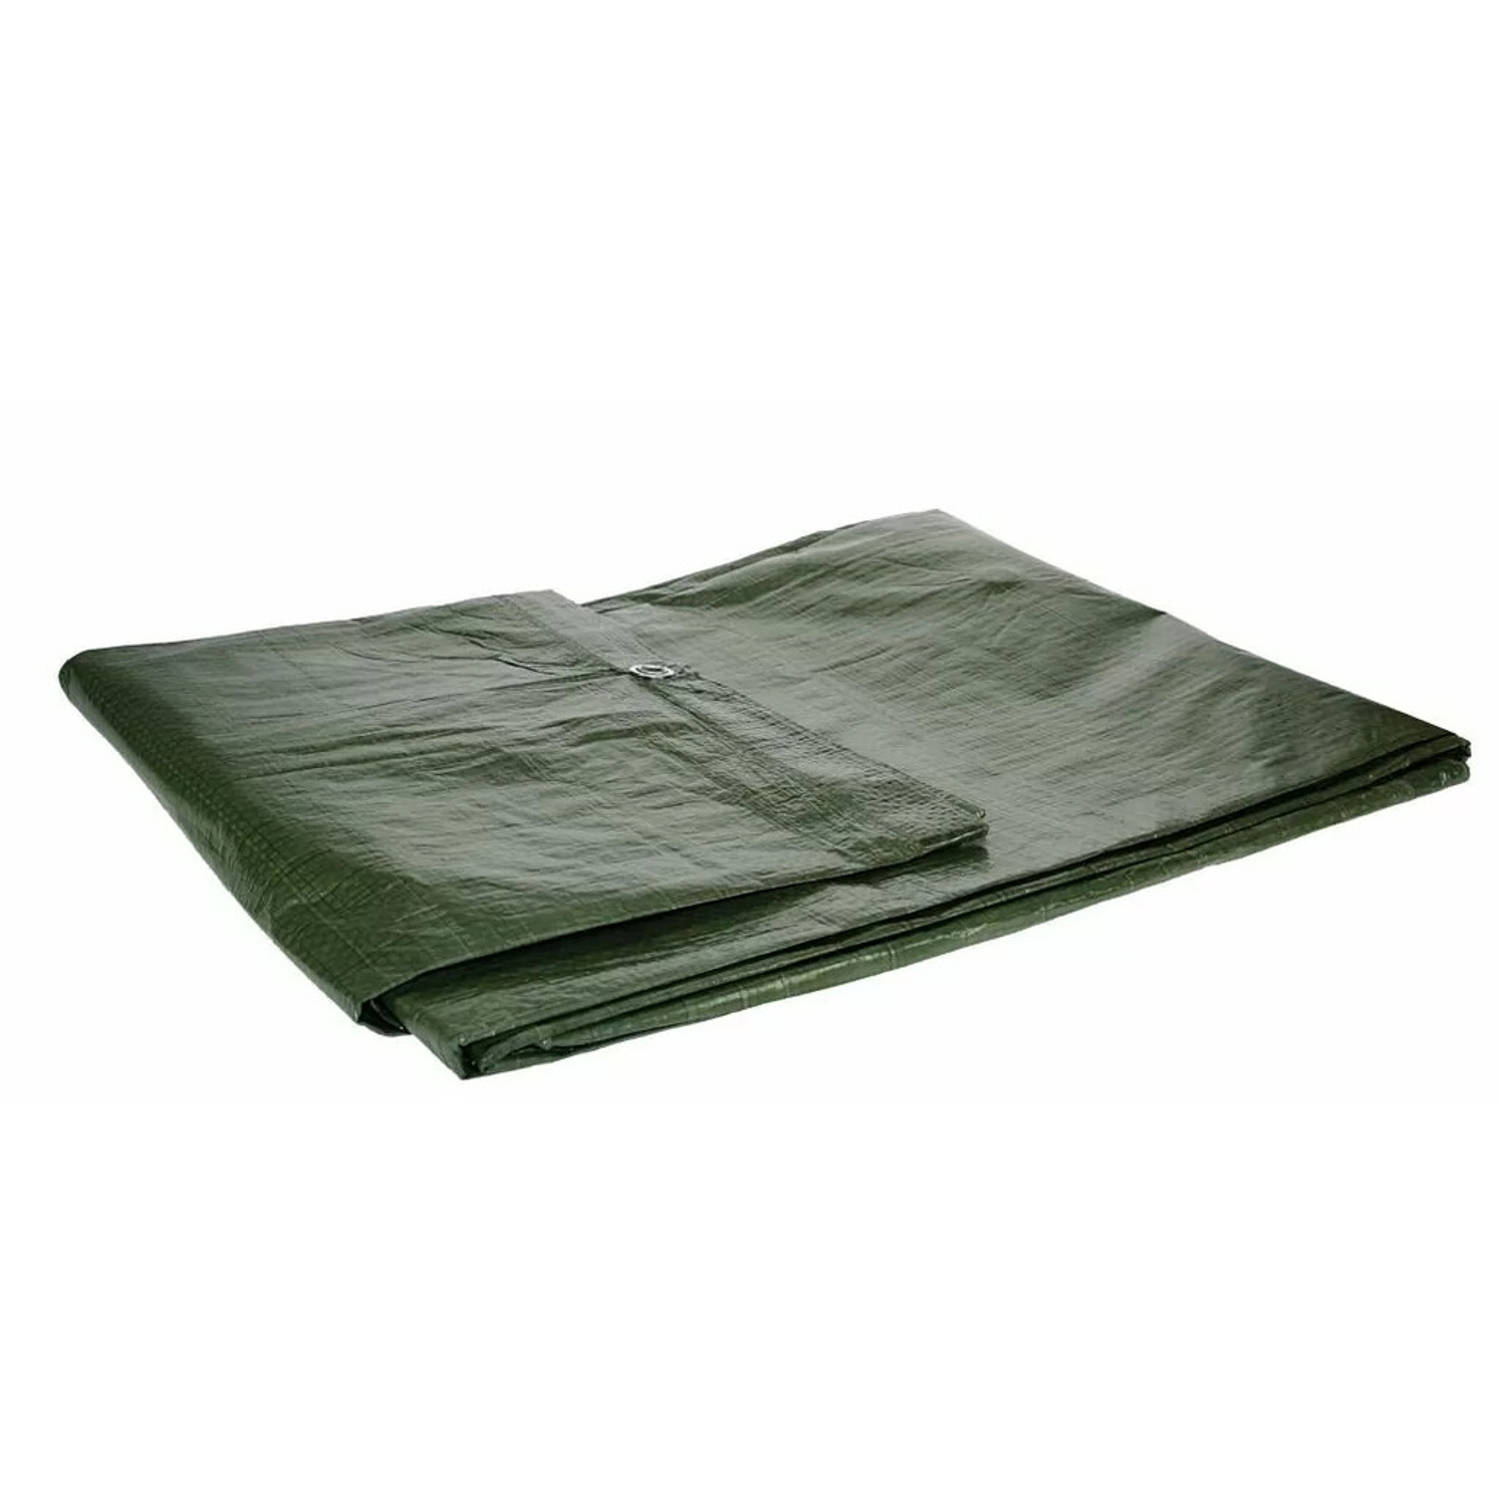 Afdekzeil/dekzeil groen waterdicht kunststof 90 gr/m2 - 200 x 300 cm - Afdekzeilen